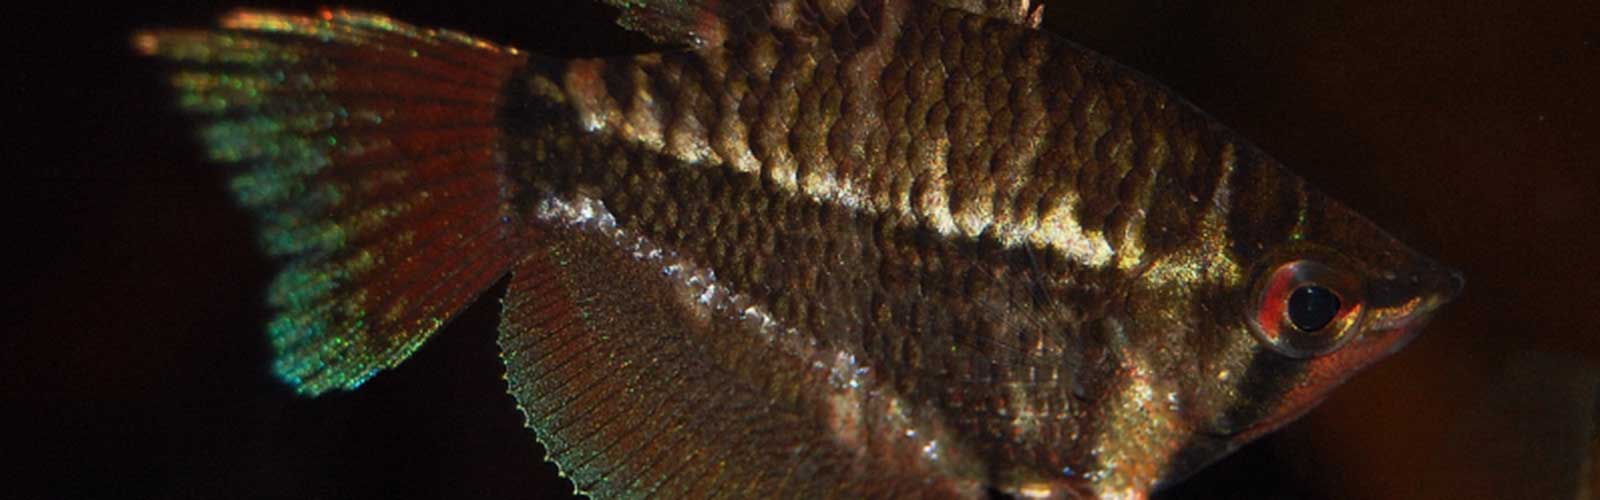 Sphaerichthys selatanensis - Keresztsávos csokoládégurámi fejkép